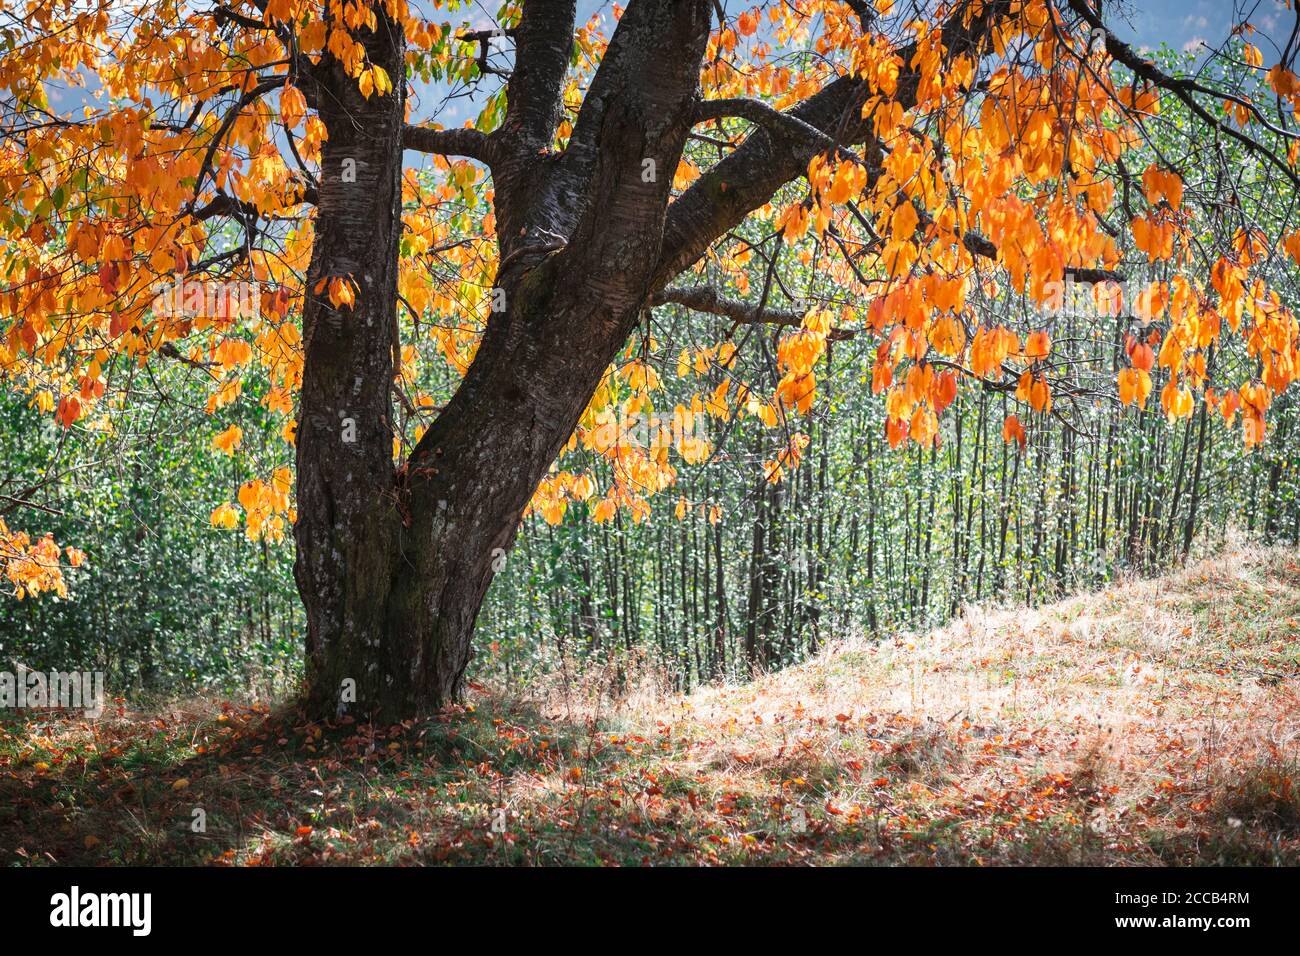 Vieux majestueux arbre avec des folliages jaunes dans la forêt d'automne. Scène d'automne pittoresque dans les montagnes Carpathian, Ukraine. Photographie de paysage Banque D'Images